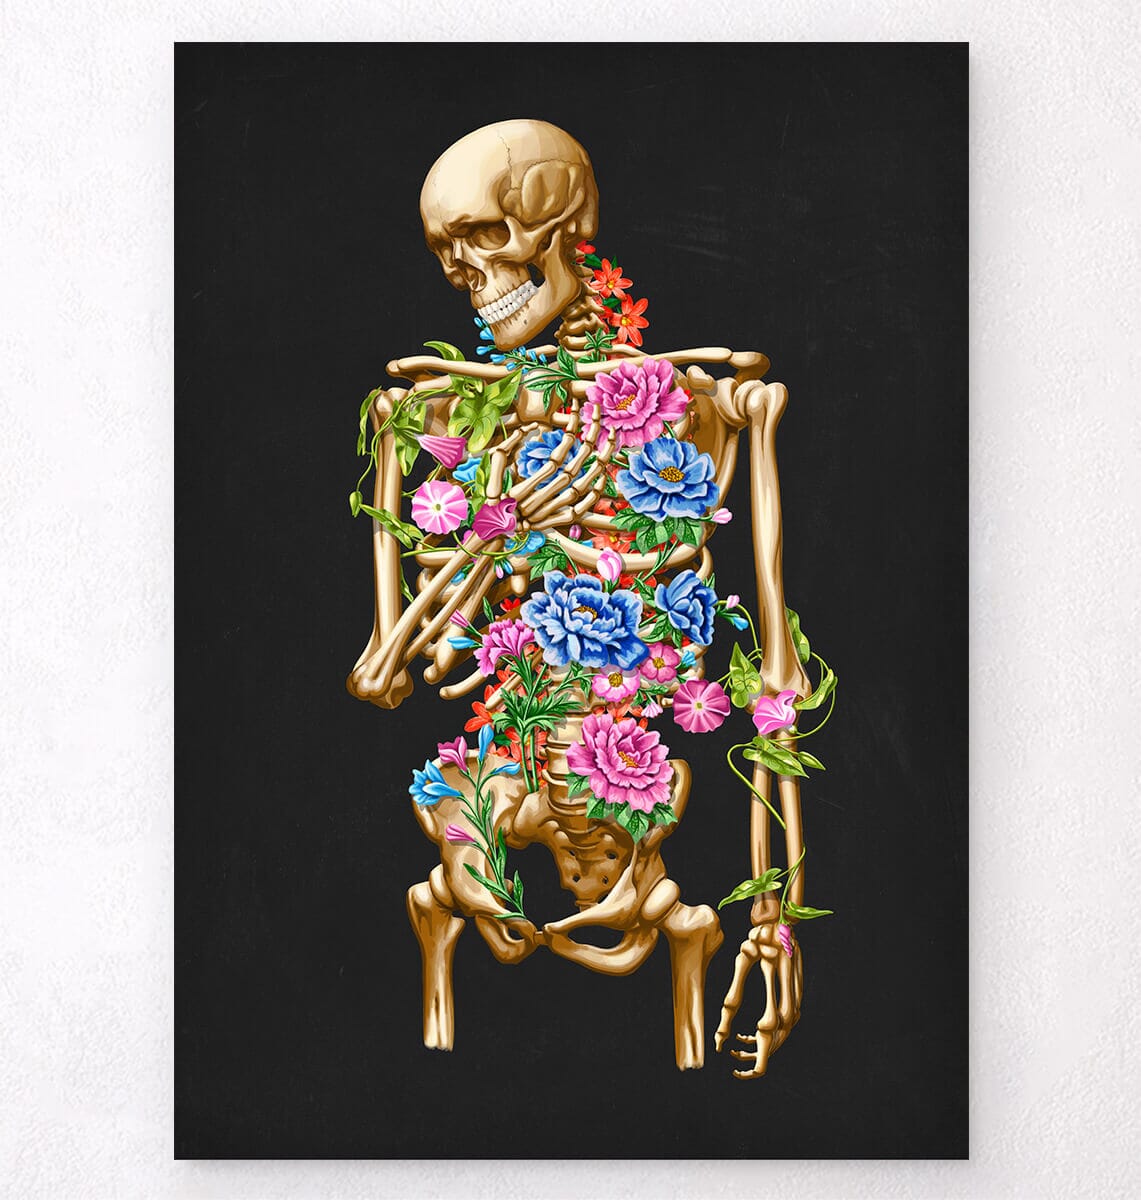 Squelette anatomique complet, Étudiants